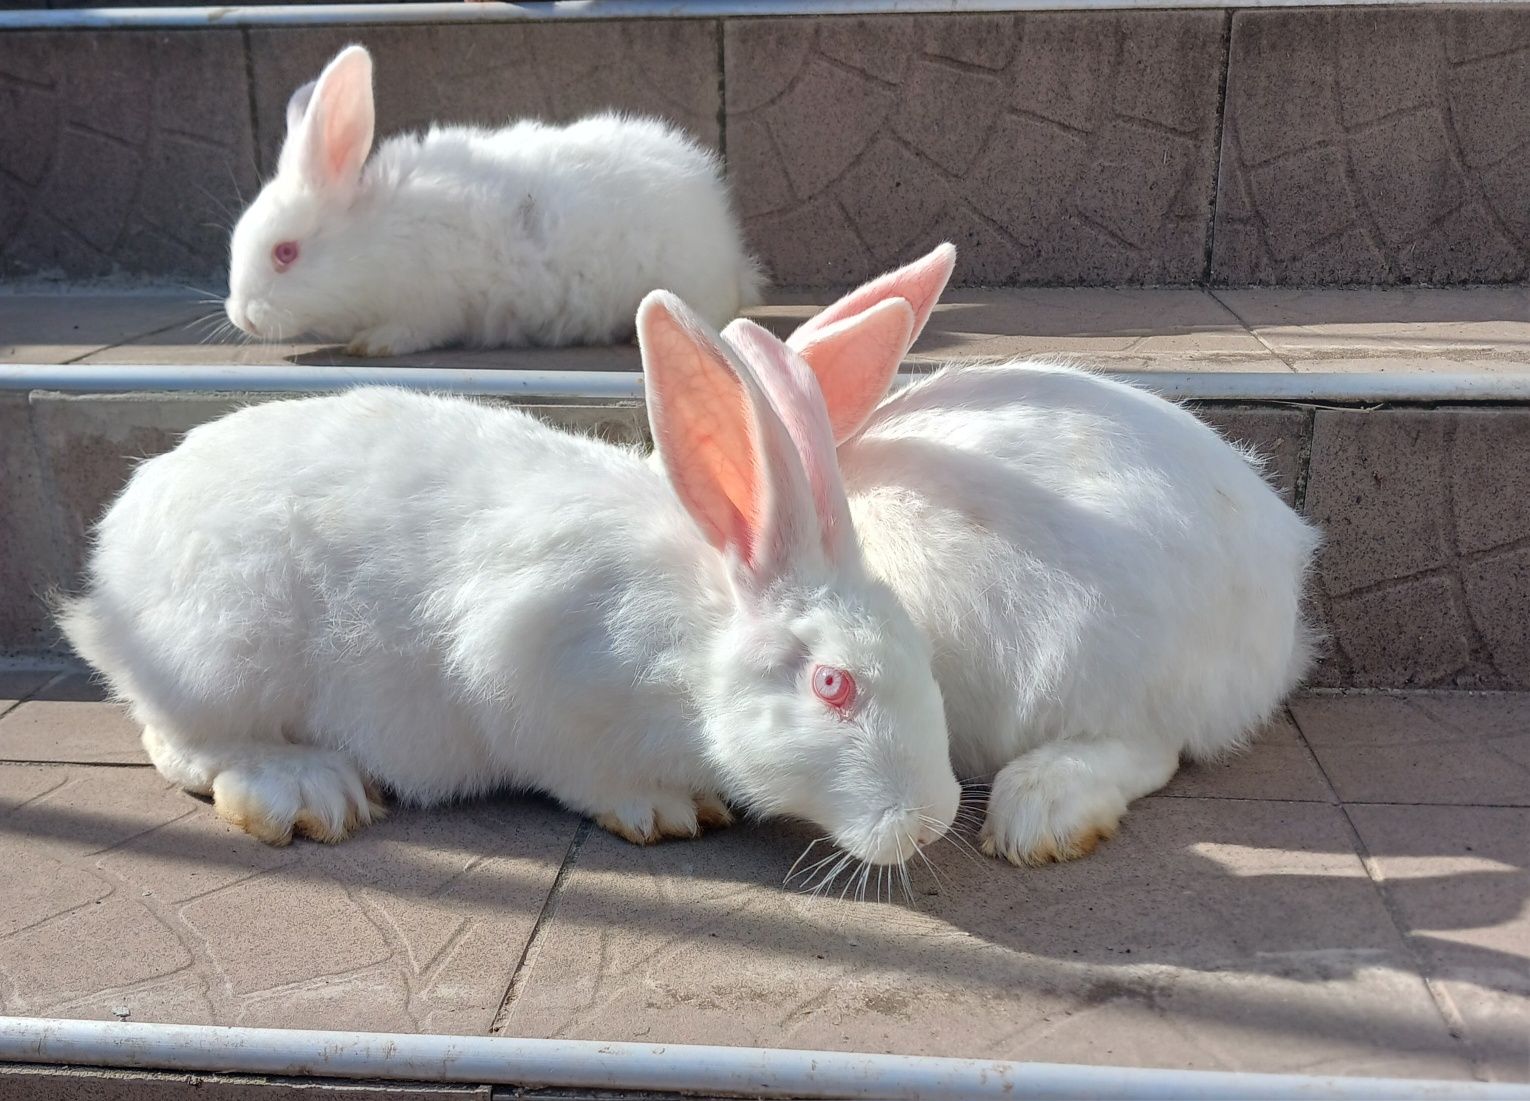 Продам кроликів породи панон